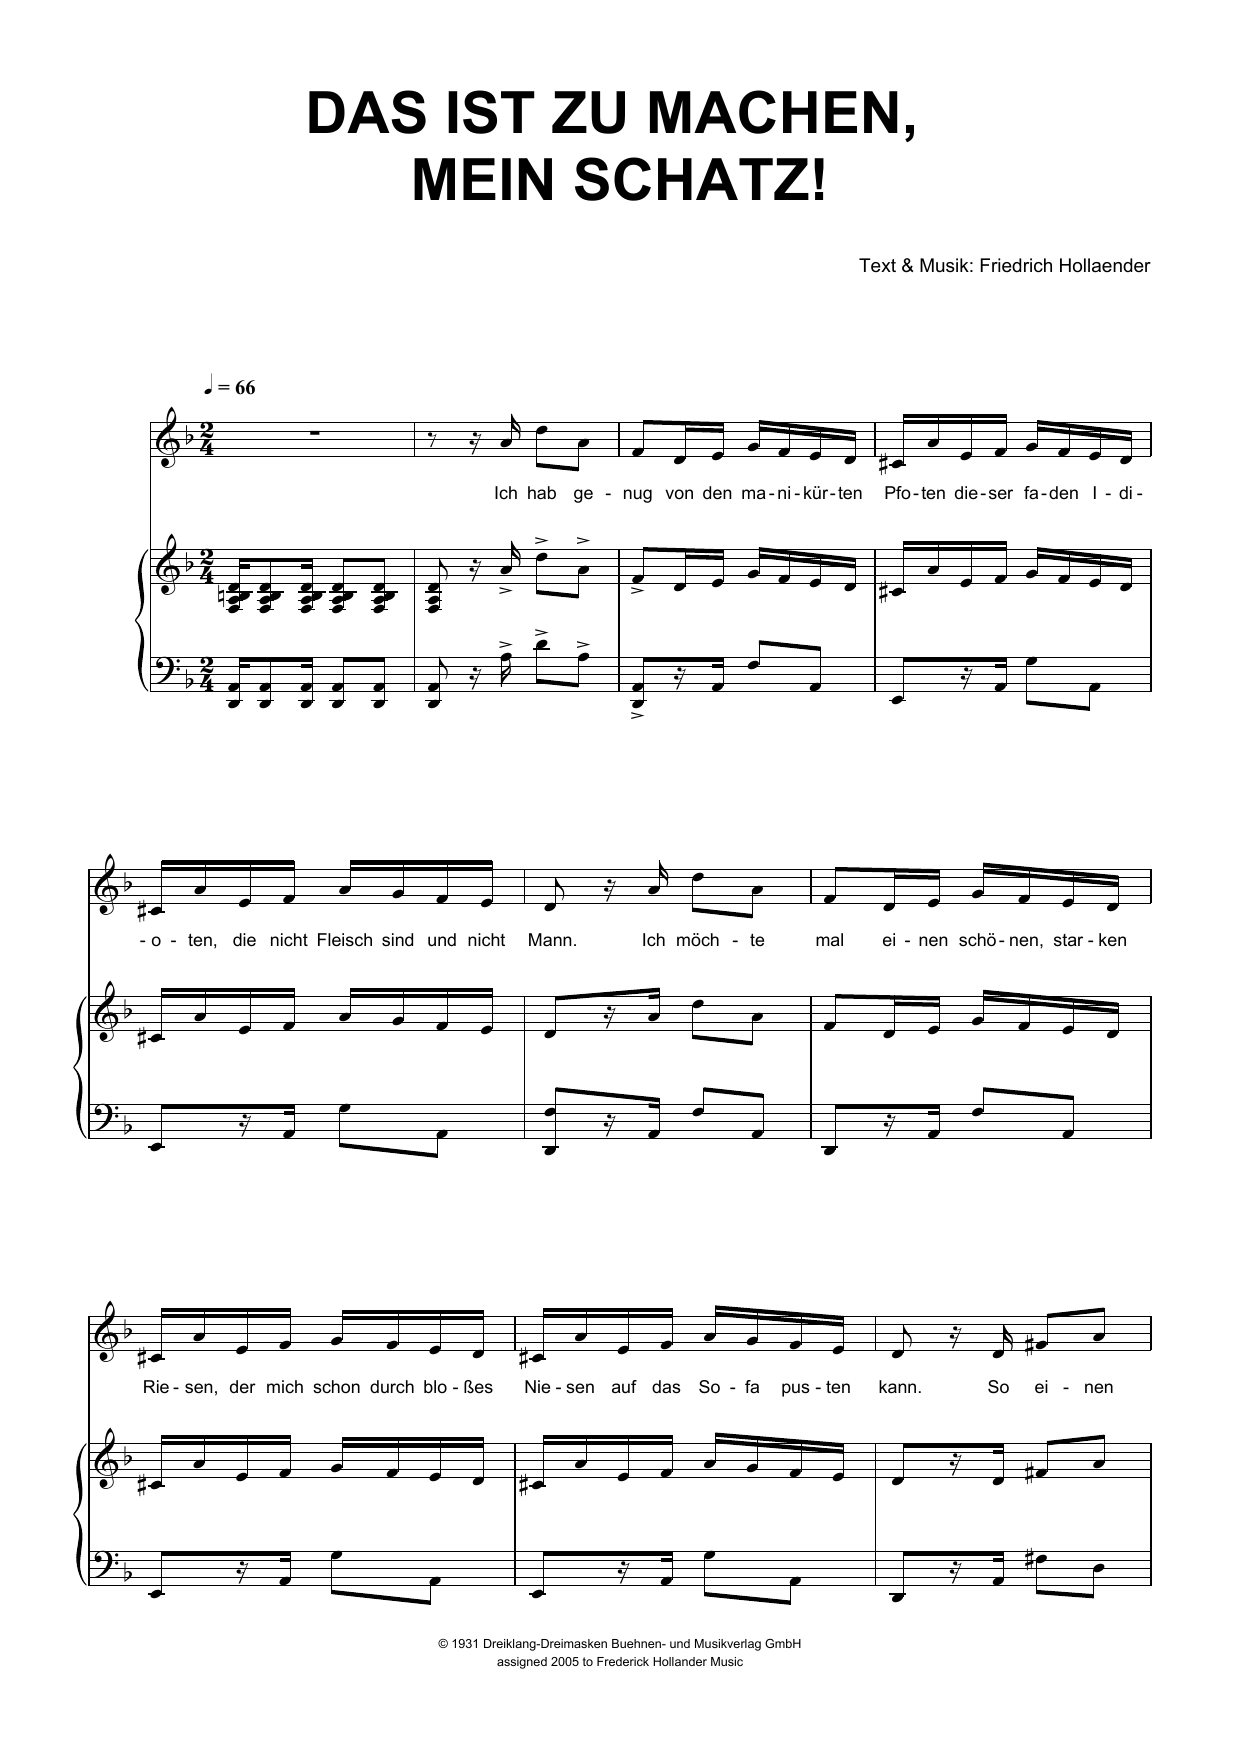 Download Friedrich Hollaender Das Ist Zu Machen, Mein Schatz! Sheet Music and learn how to play Piano & Vocal PDF digital score in minutes